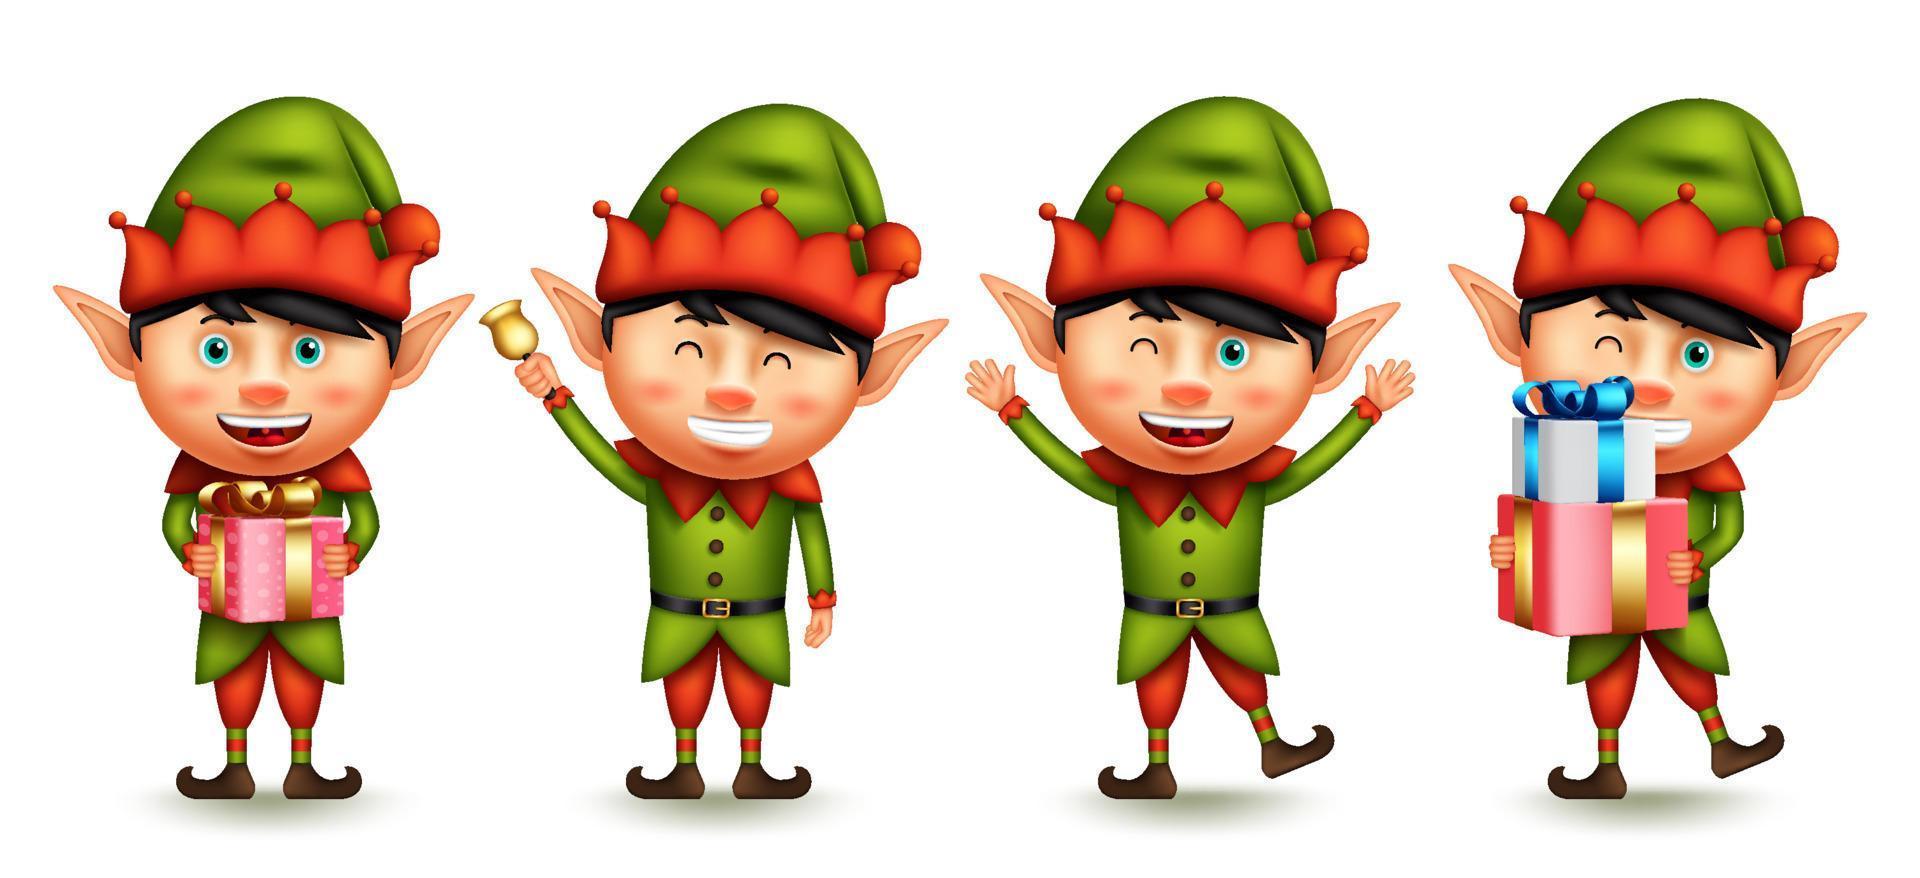 jeu de vecteurs de caractères de Noël elfe. enfants elfes dans des personnages graphiques 3d avec une expression heureuse agitant, donnant et tenant des cadeaux pour une collection de design conviviale pour Noël. illustration vectorielle. vecteur